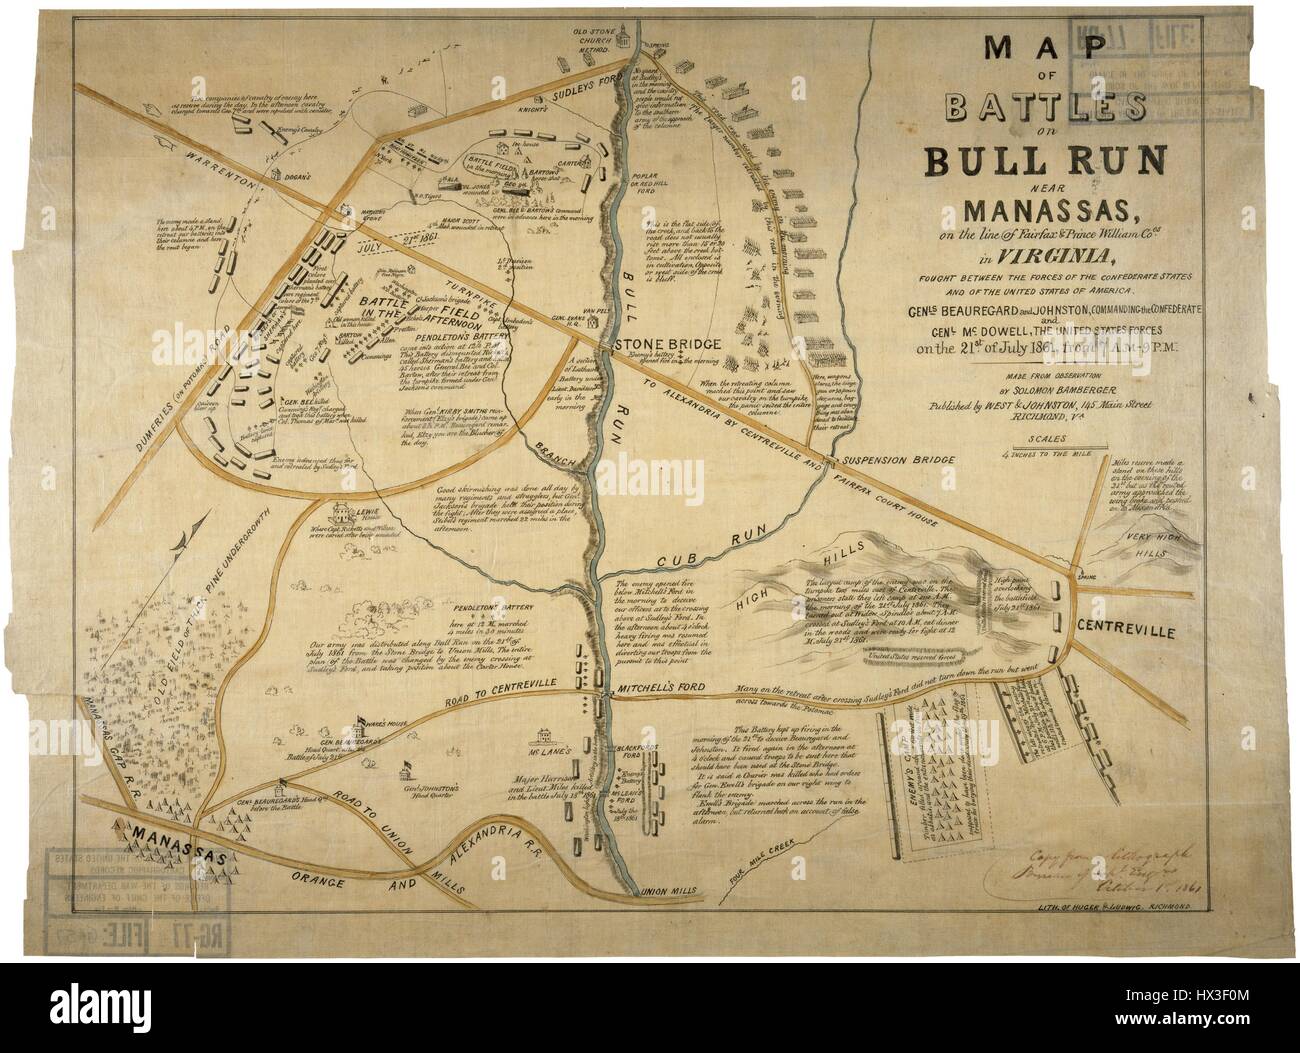 Mappa delle battaglie di Bull Run vicino a Manassas, Virginia, 1861. Immagine cortesia archivi nazionali. Foto Stock